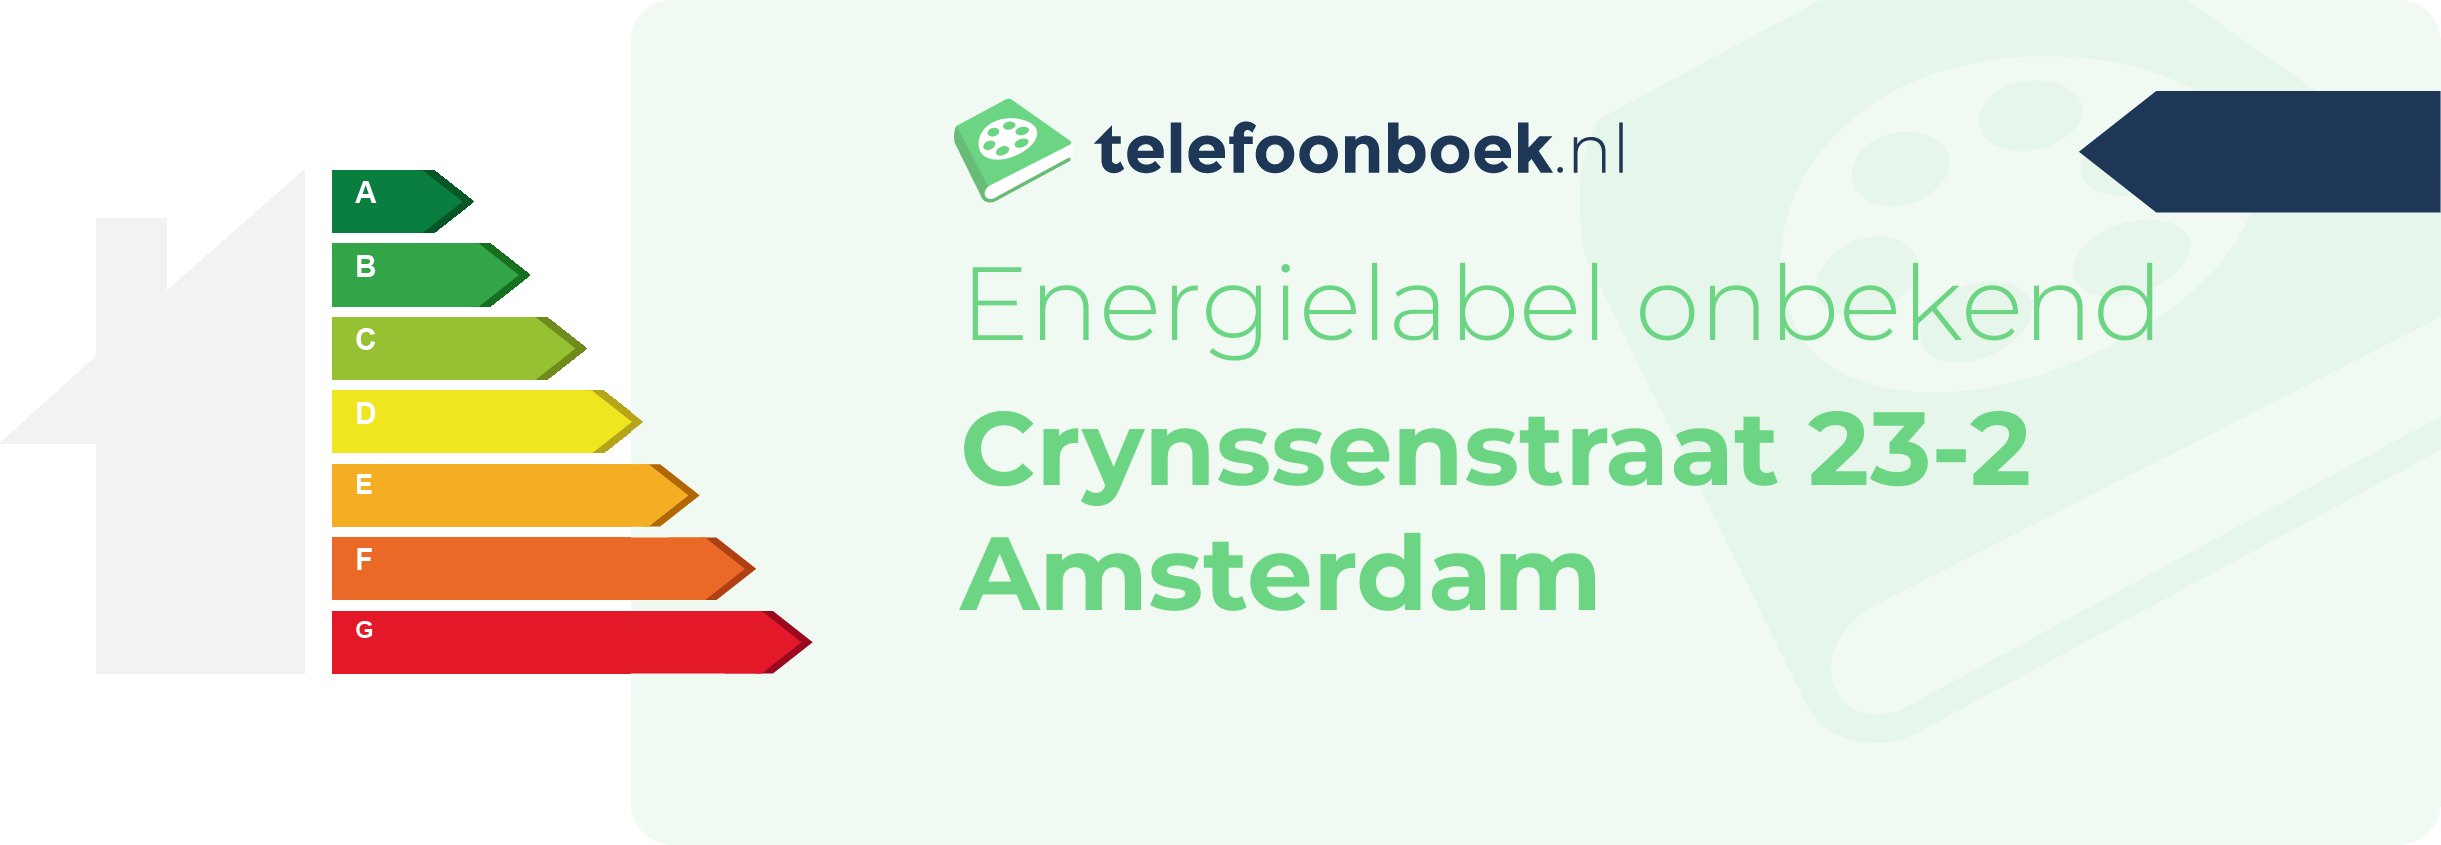 Energielabel Crynssenstraat 23-2 Amsterdam